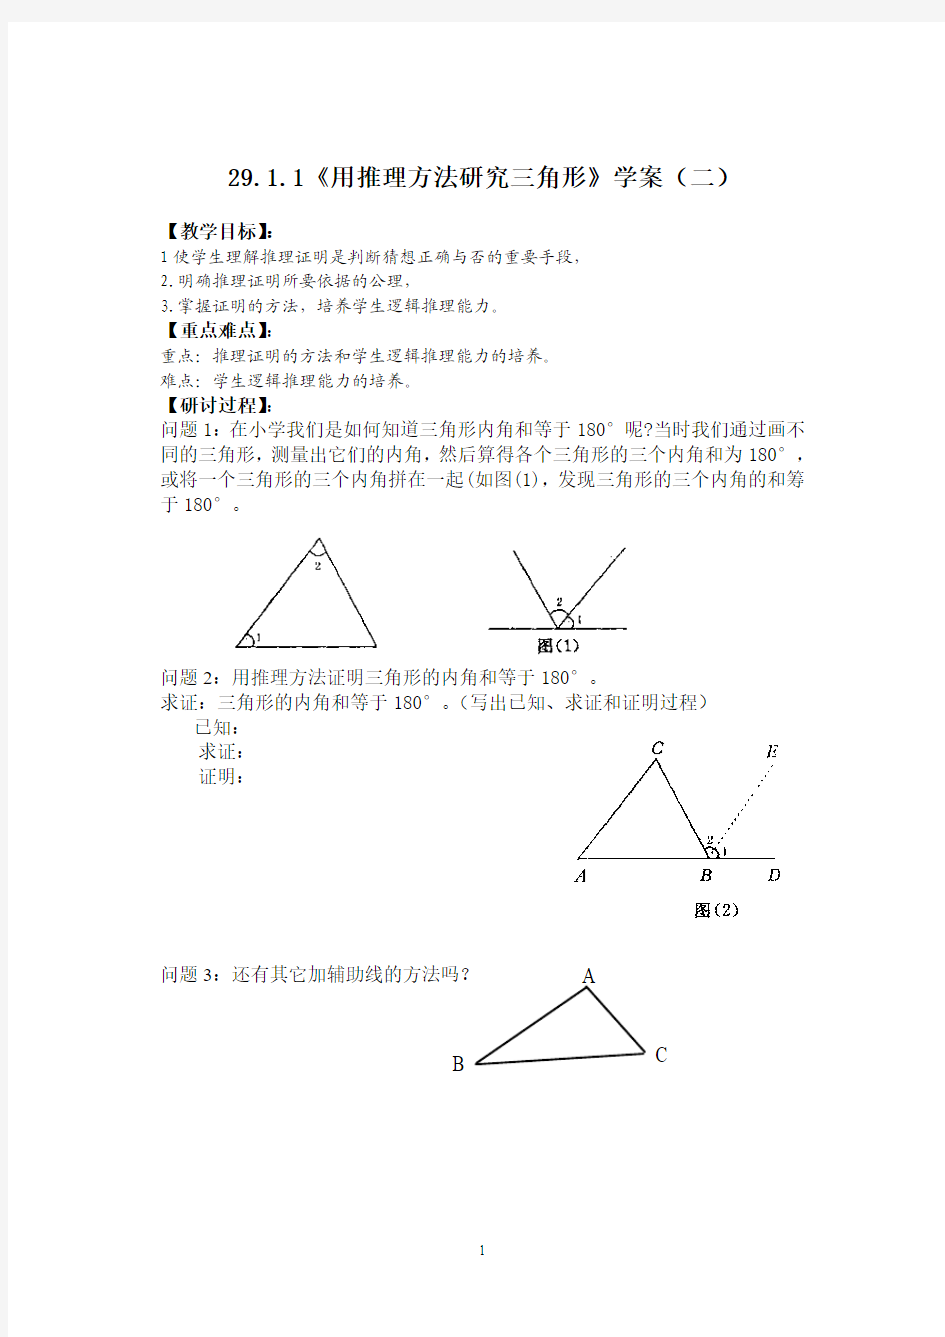 《用推理方法研究三角形》学案(二)